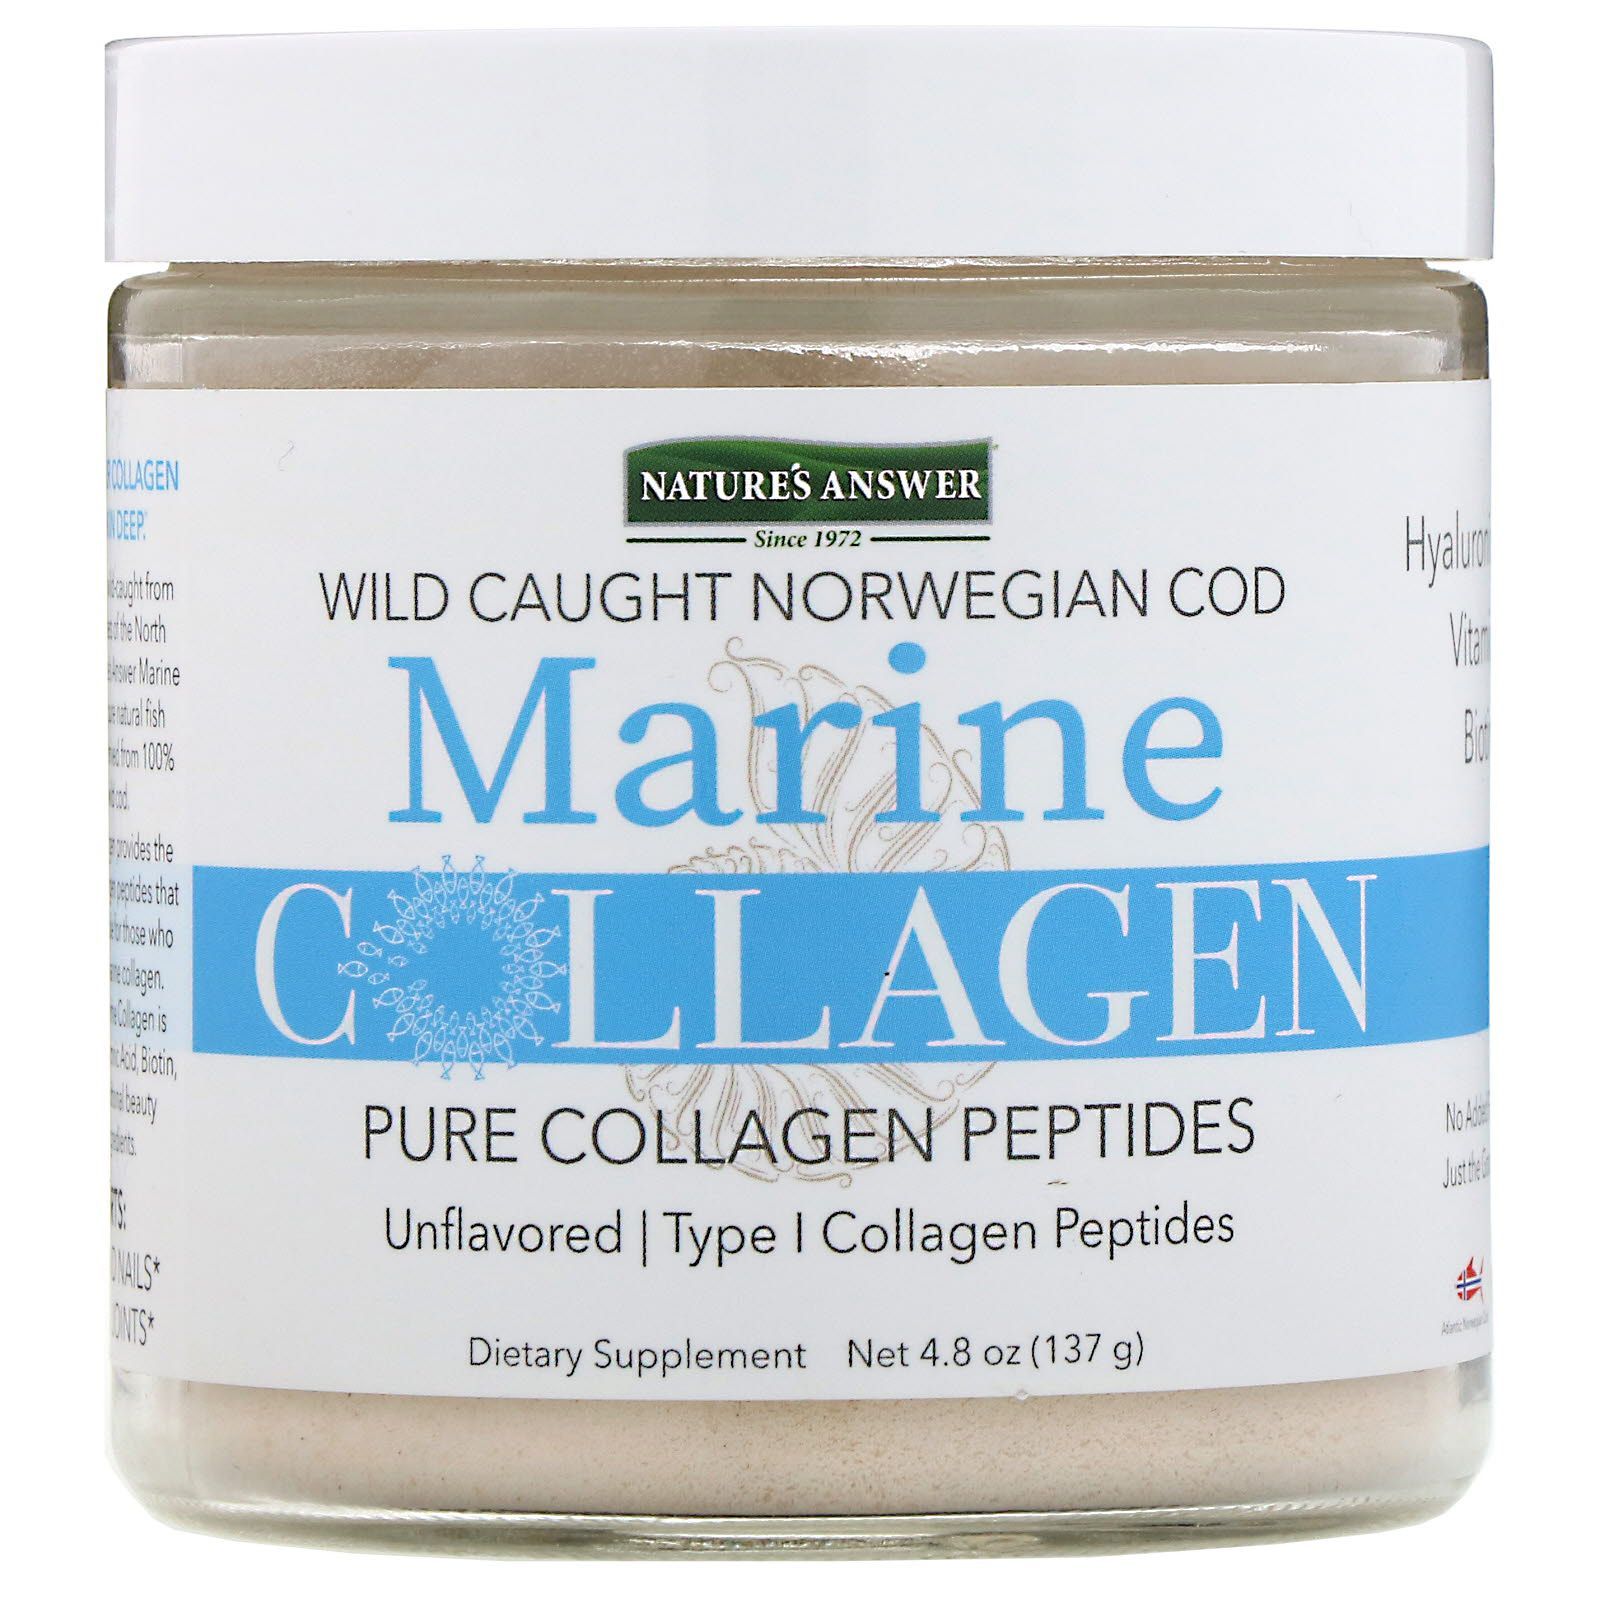 Коллаген морской купить цена. Collagen Marine коллаген solumeve. Норвежский коллаген Pure Marine. Коллаген морской Wild caught. Коллаген натурес пептиды.